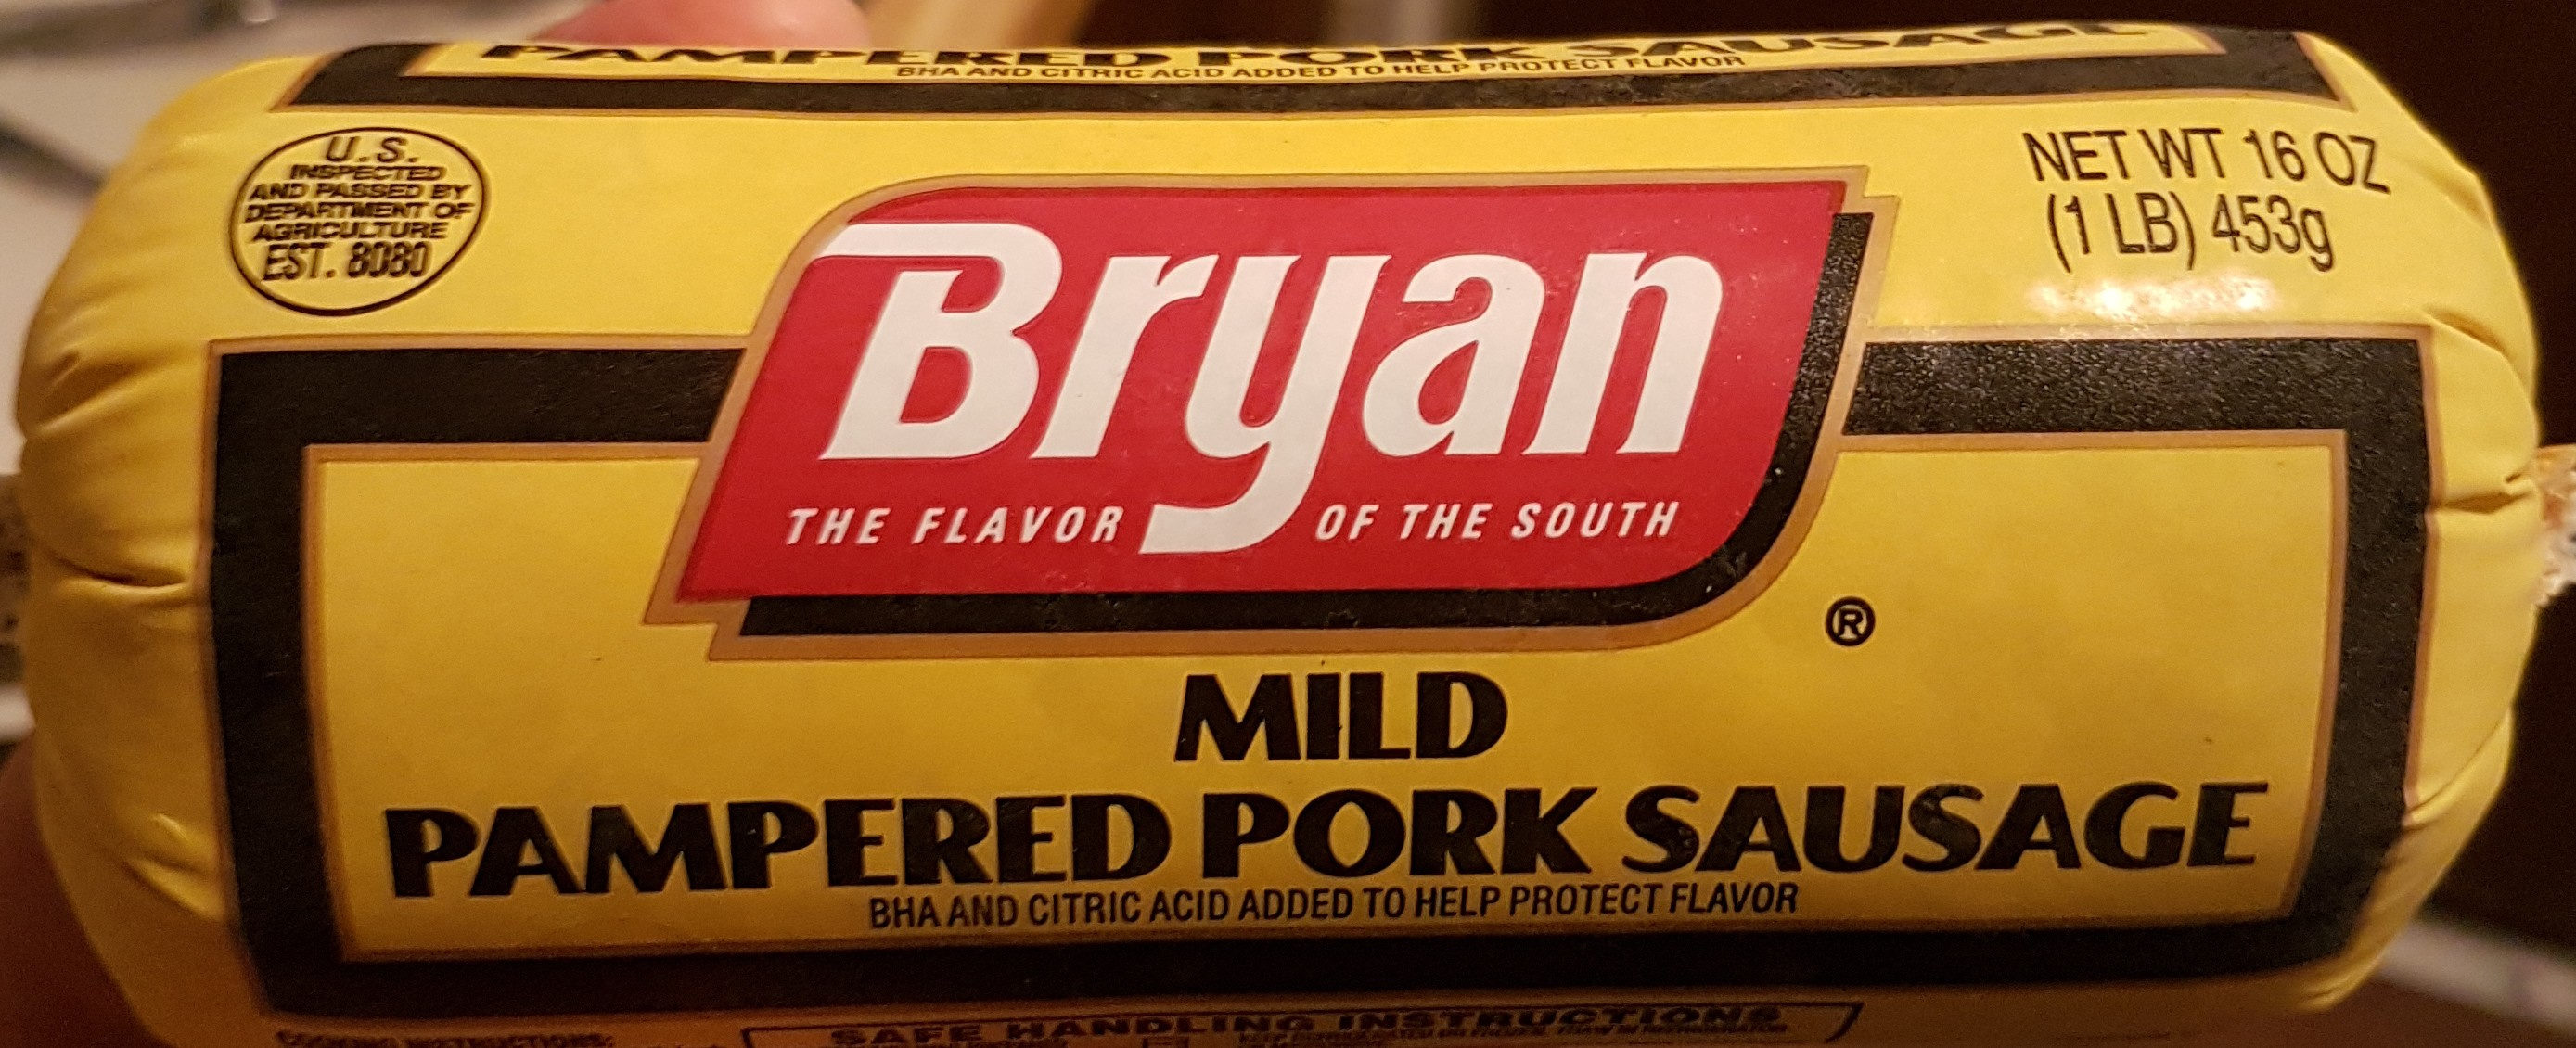 Mild Pampered Pork Sausage - Product